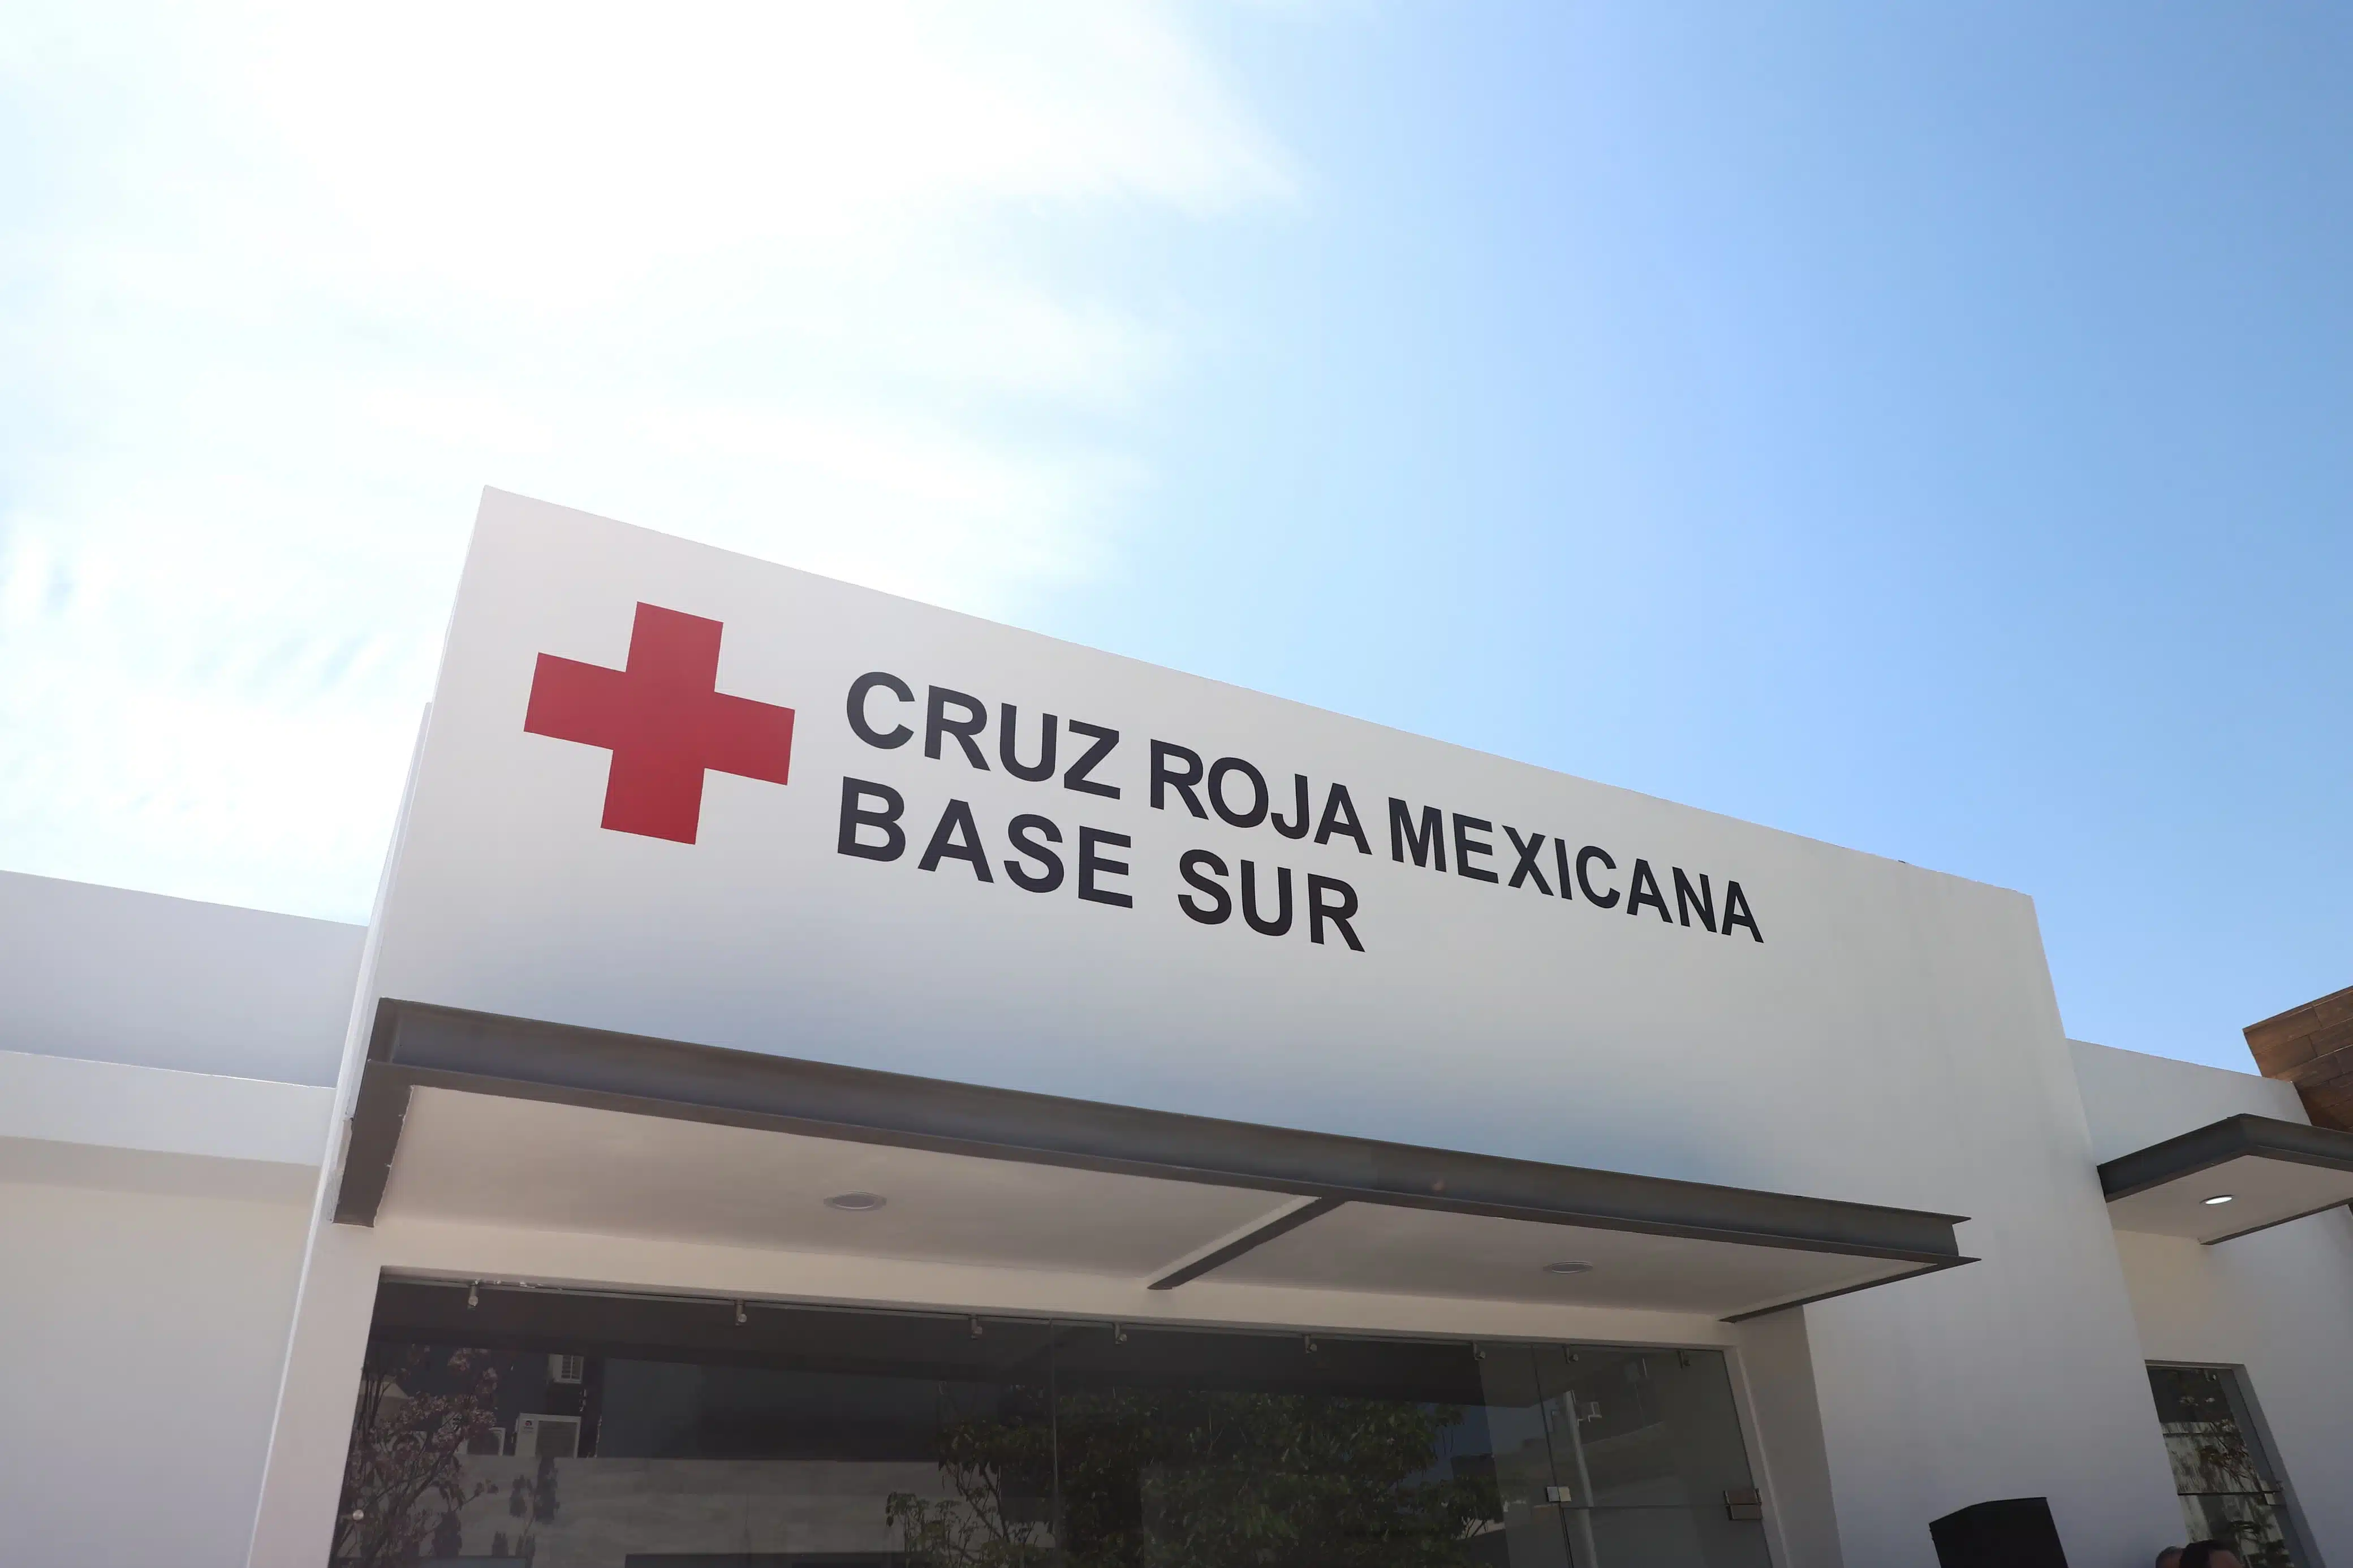 Cruz Roja Mexicana base sur en Culiacán